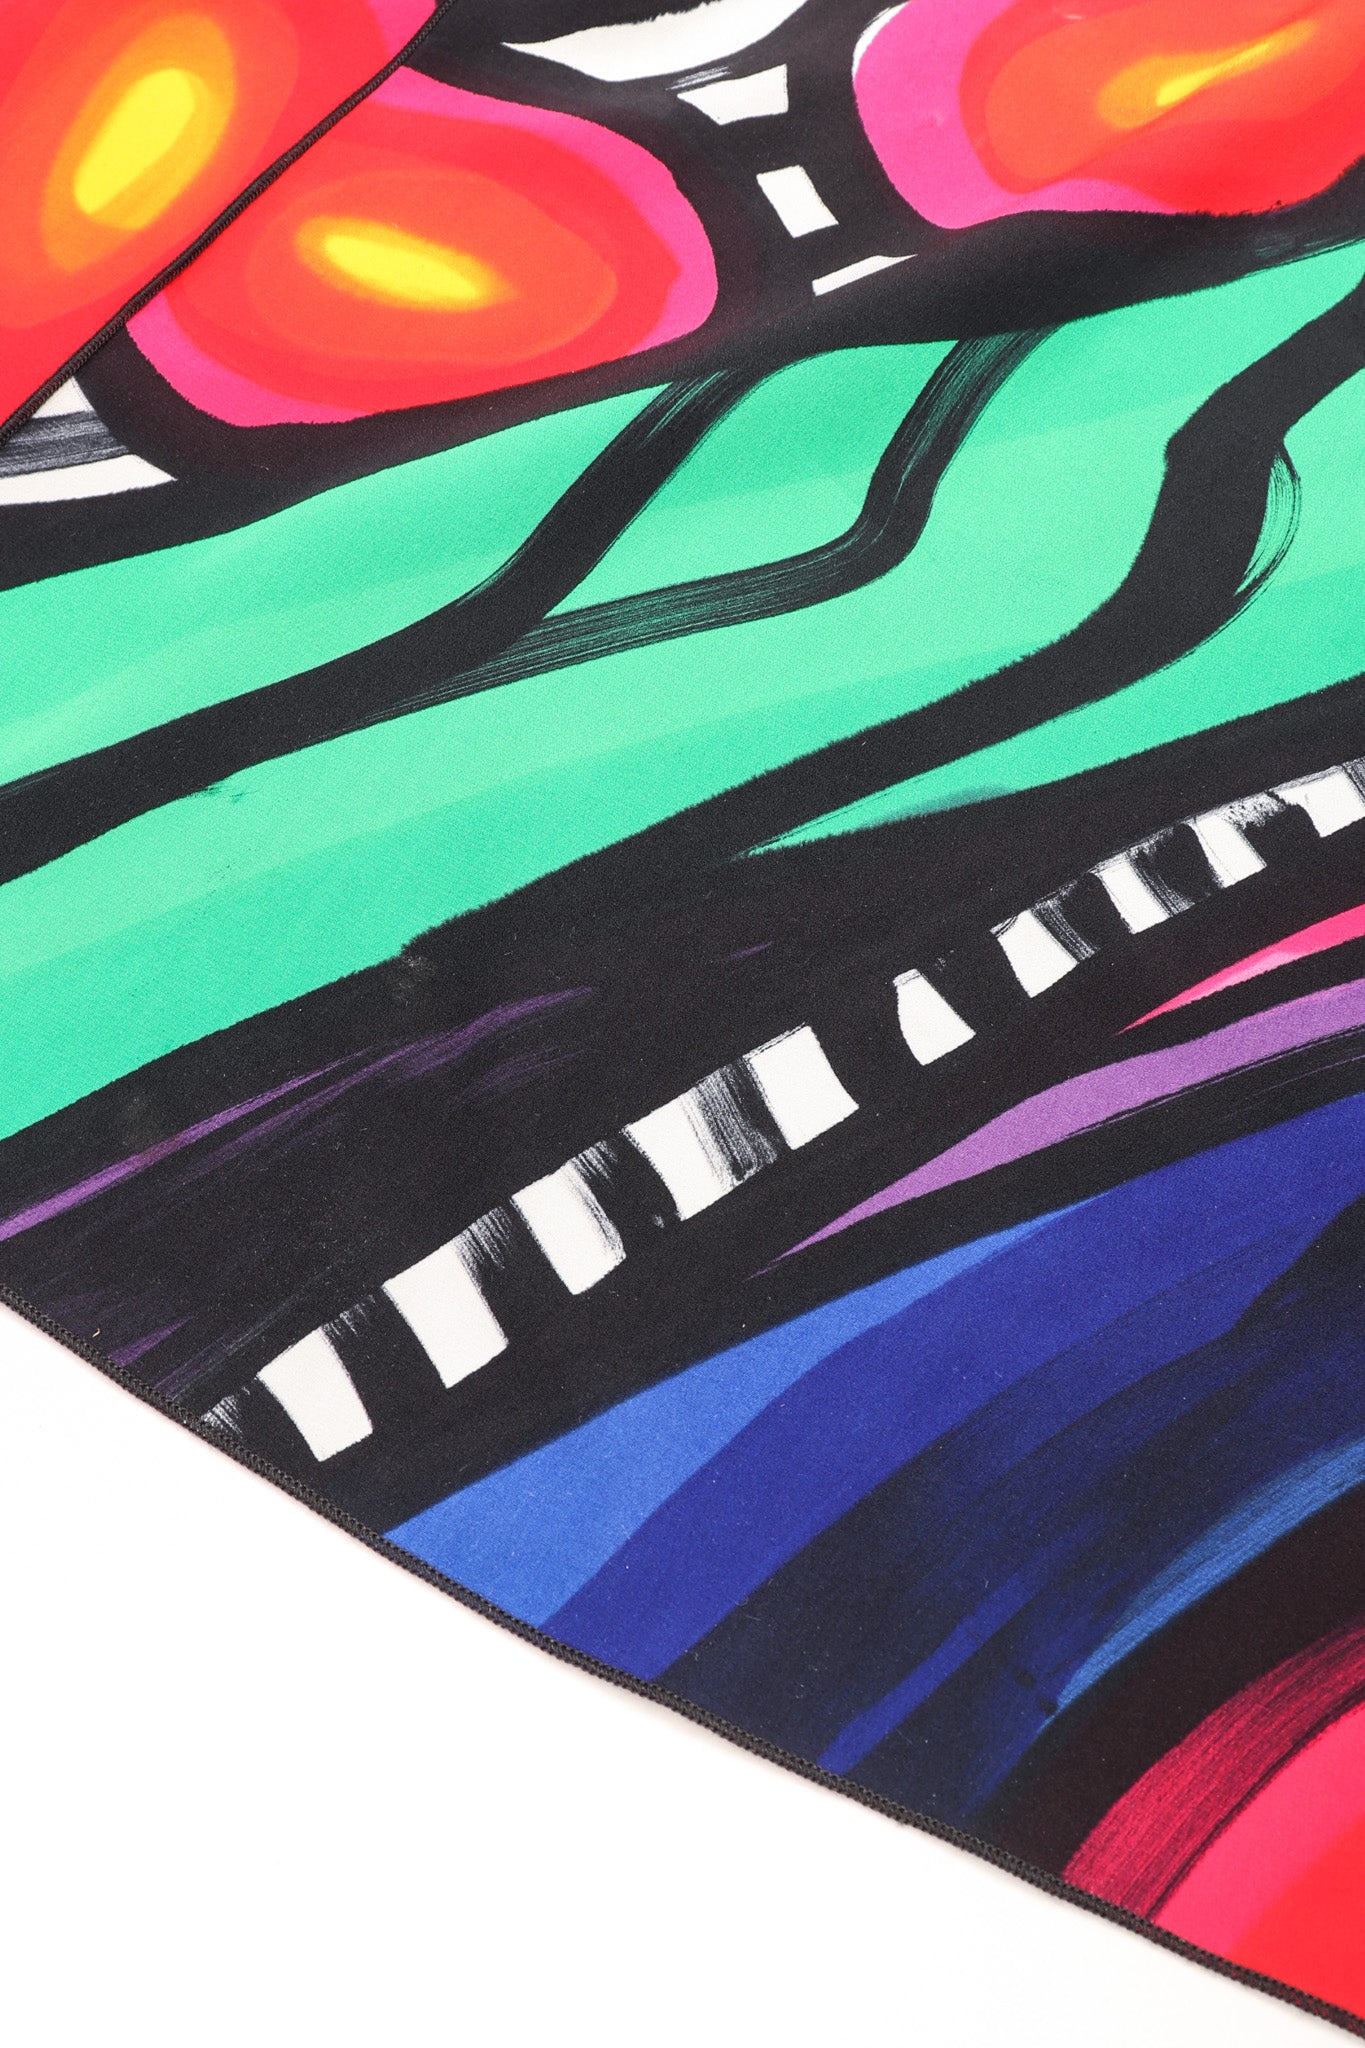 Recess Los Angeles Vintage Yolanda Lorente Abstract Hand Painted Silk Jacket